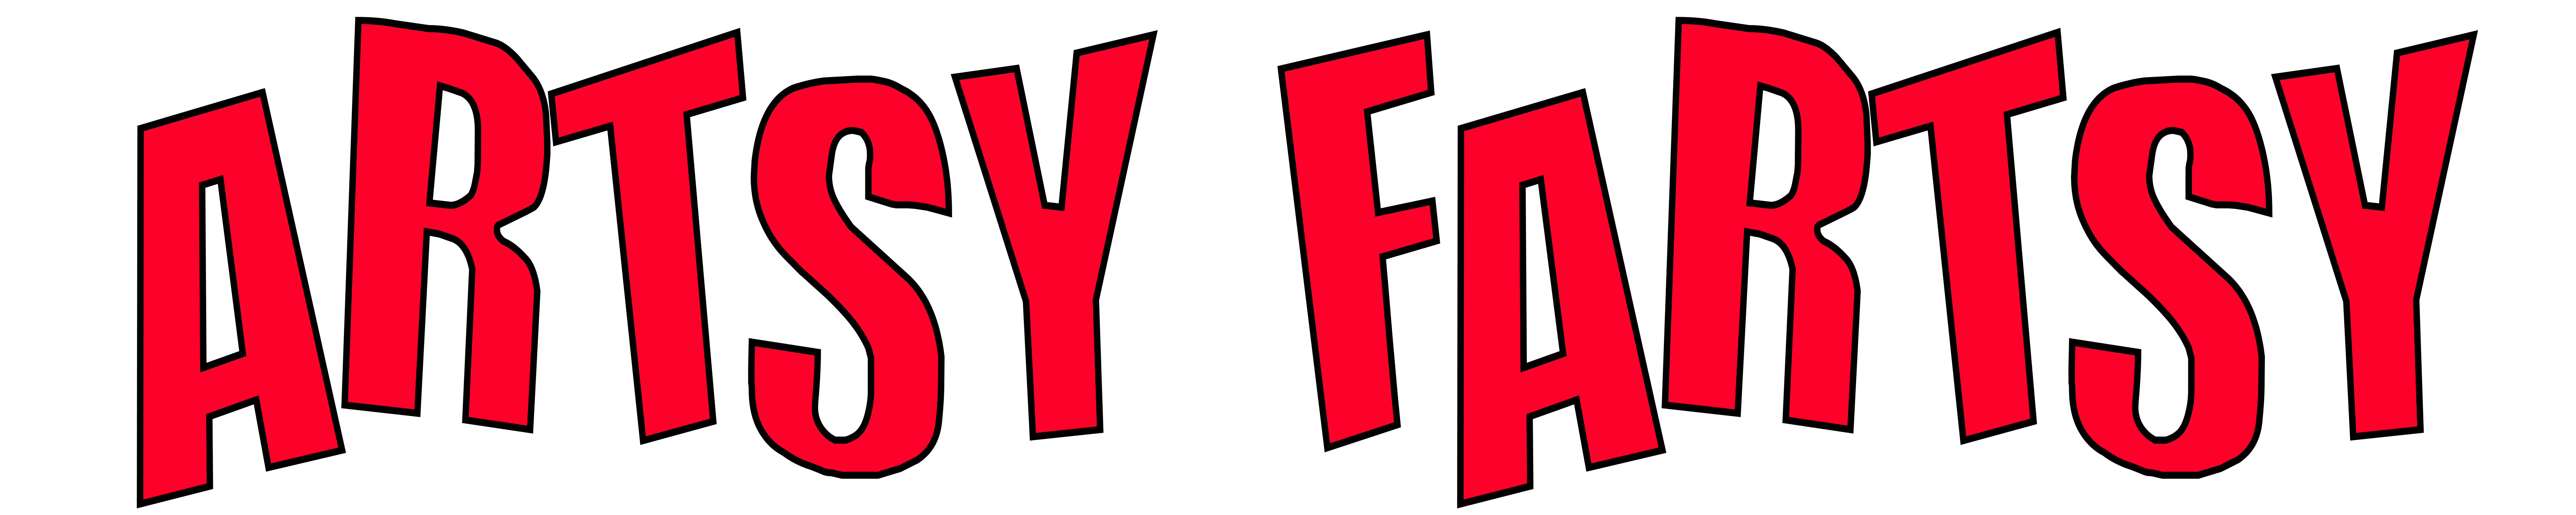 Artsy Fartsy Text Logo Red